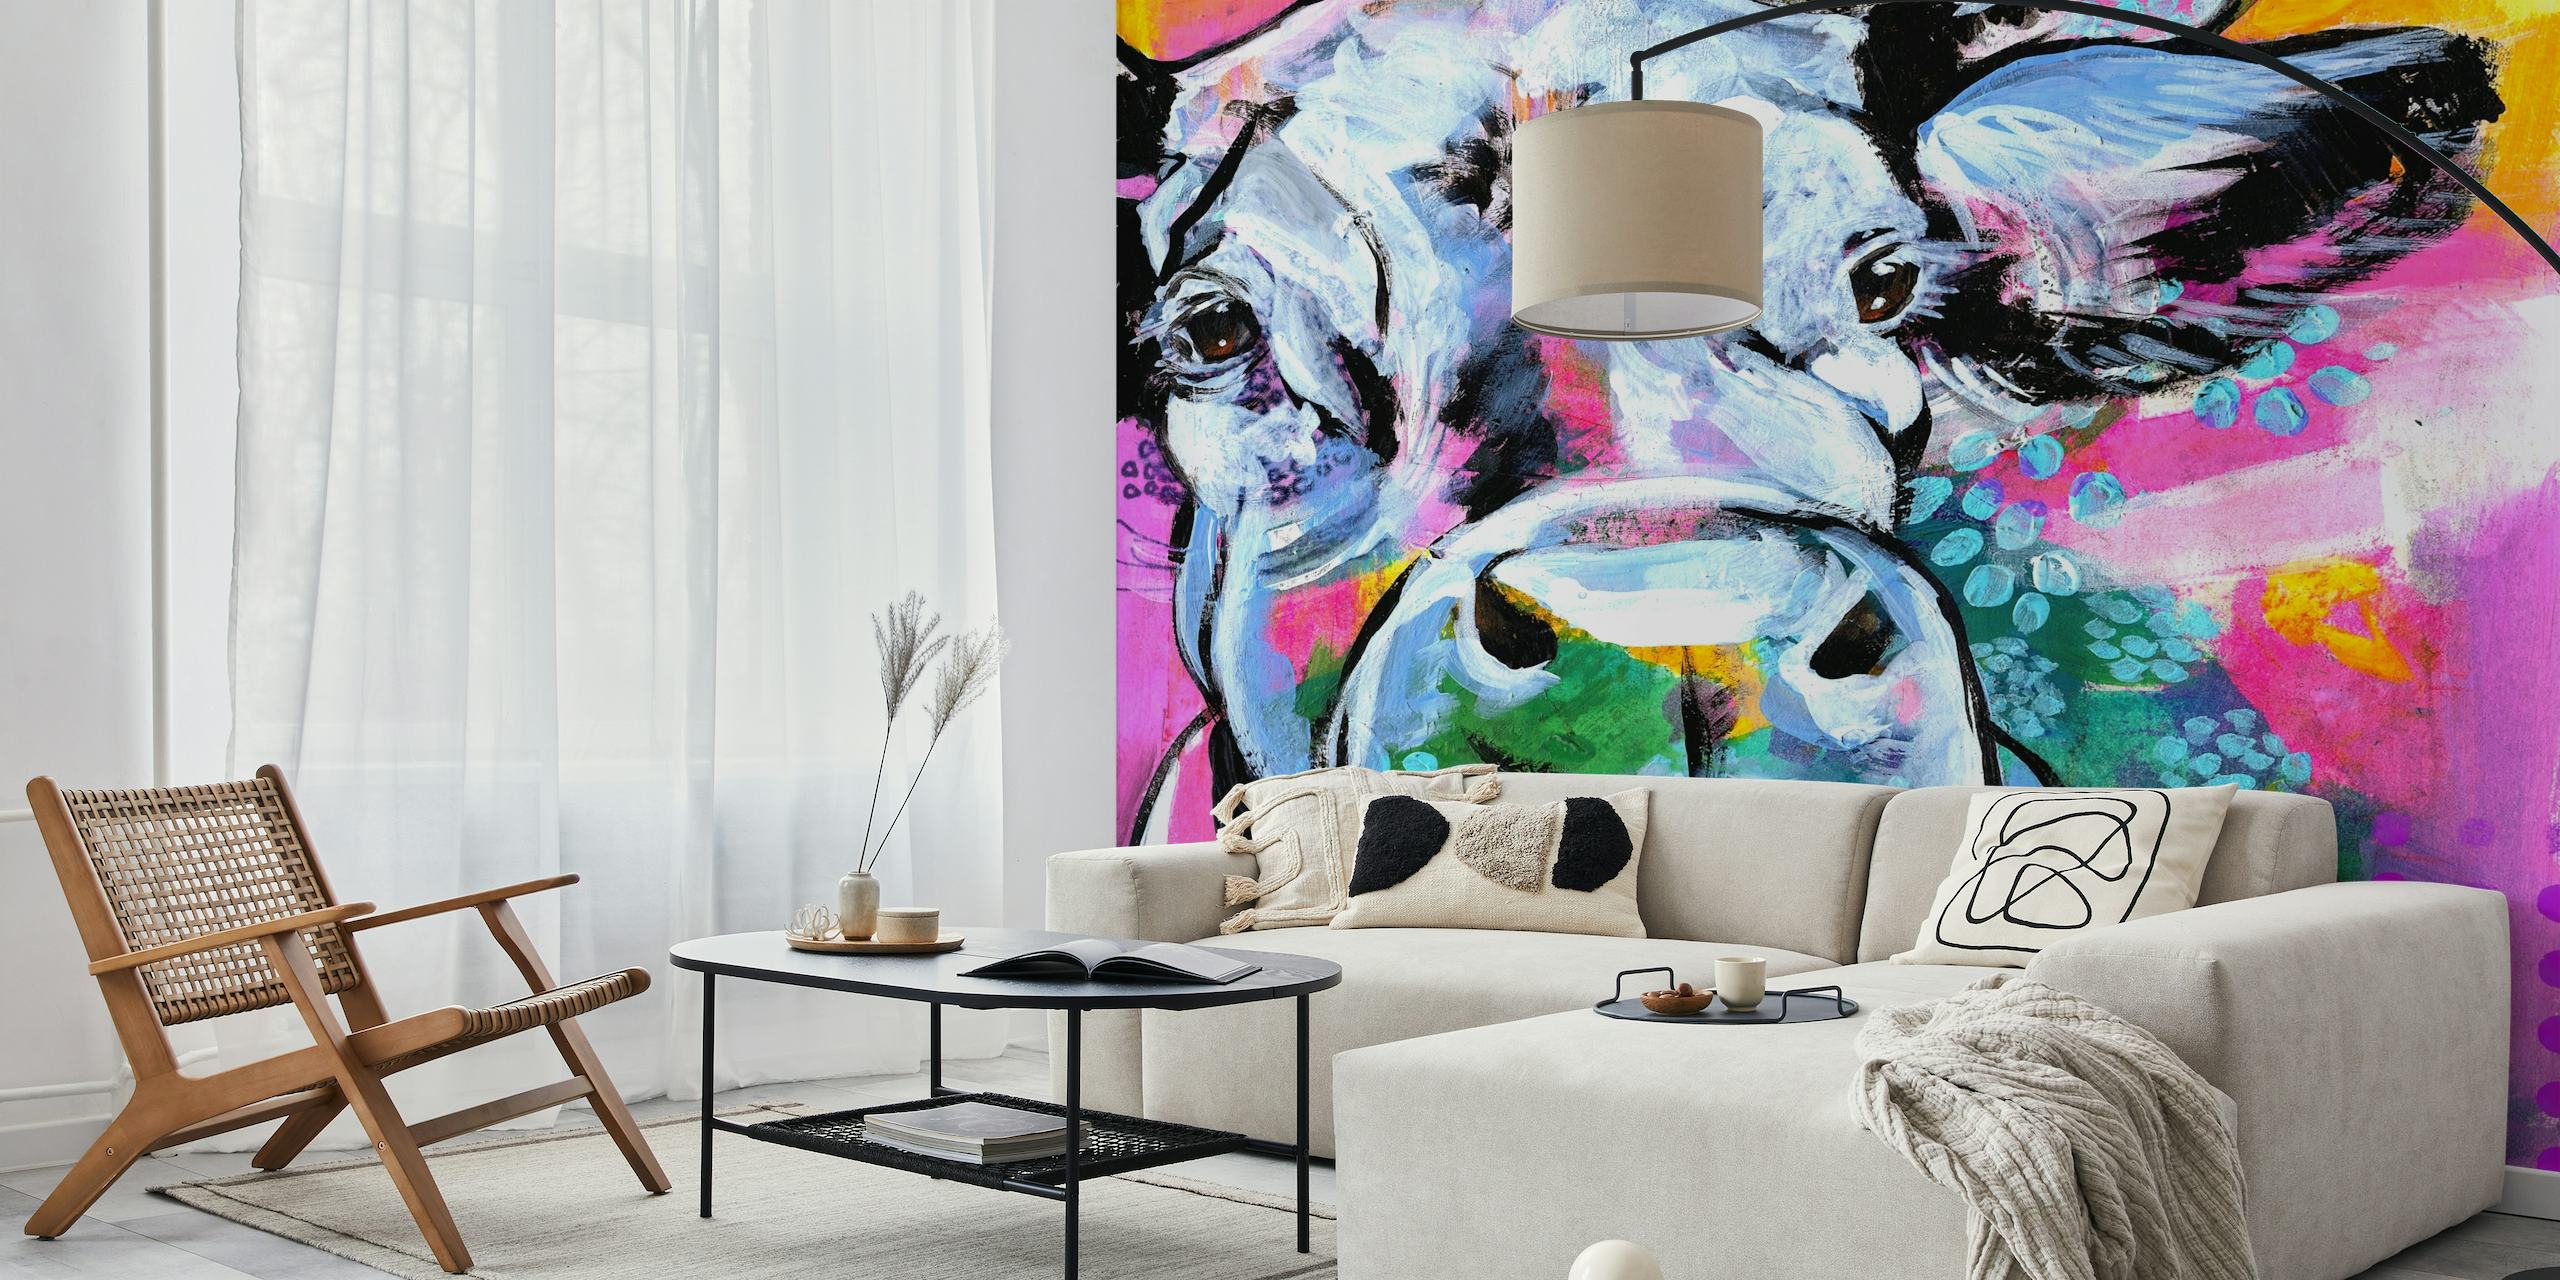 Kleurrijke kunstmuurschildering met een koe met een abstract ontwerp met heldere kleuren en patronen